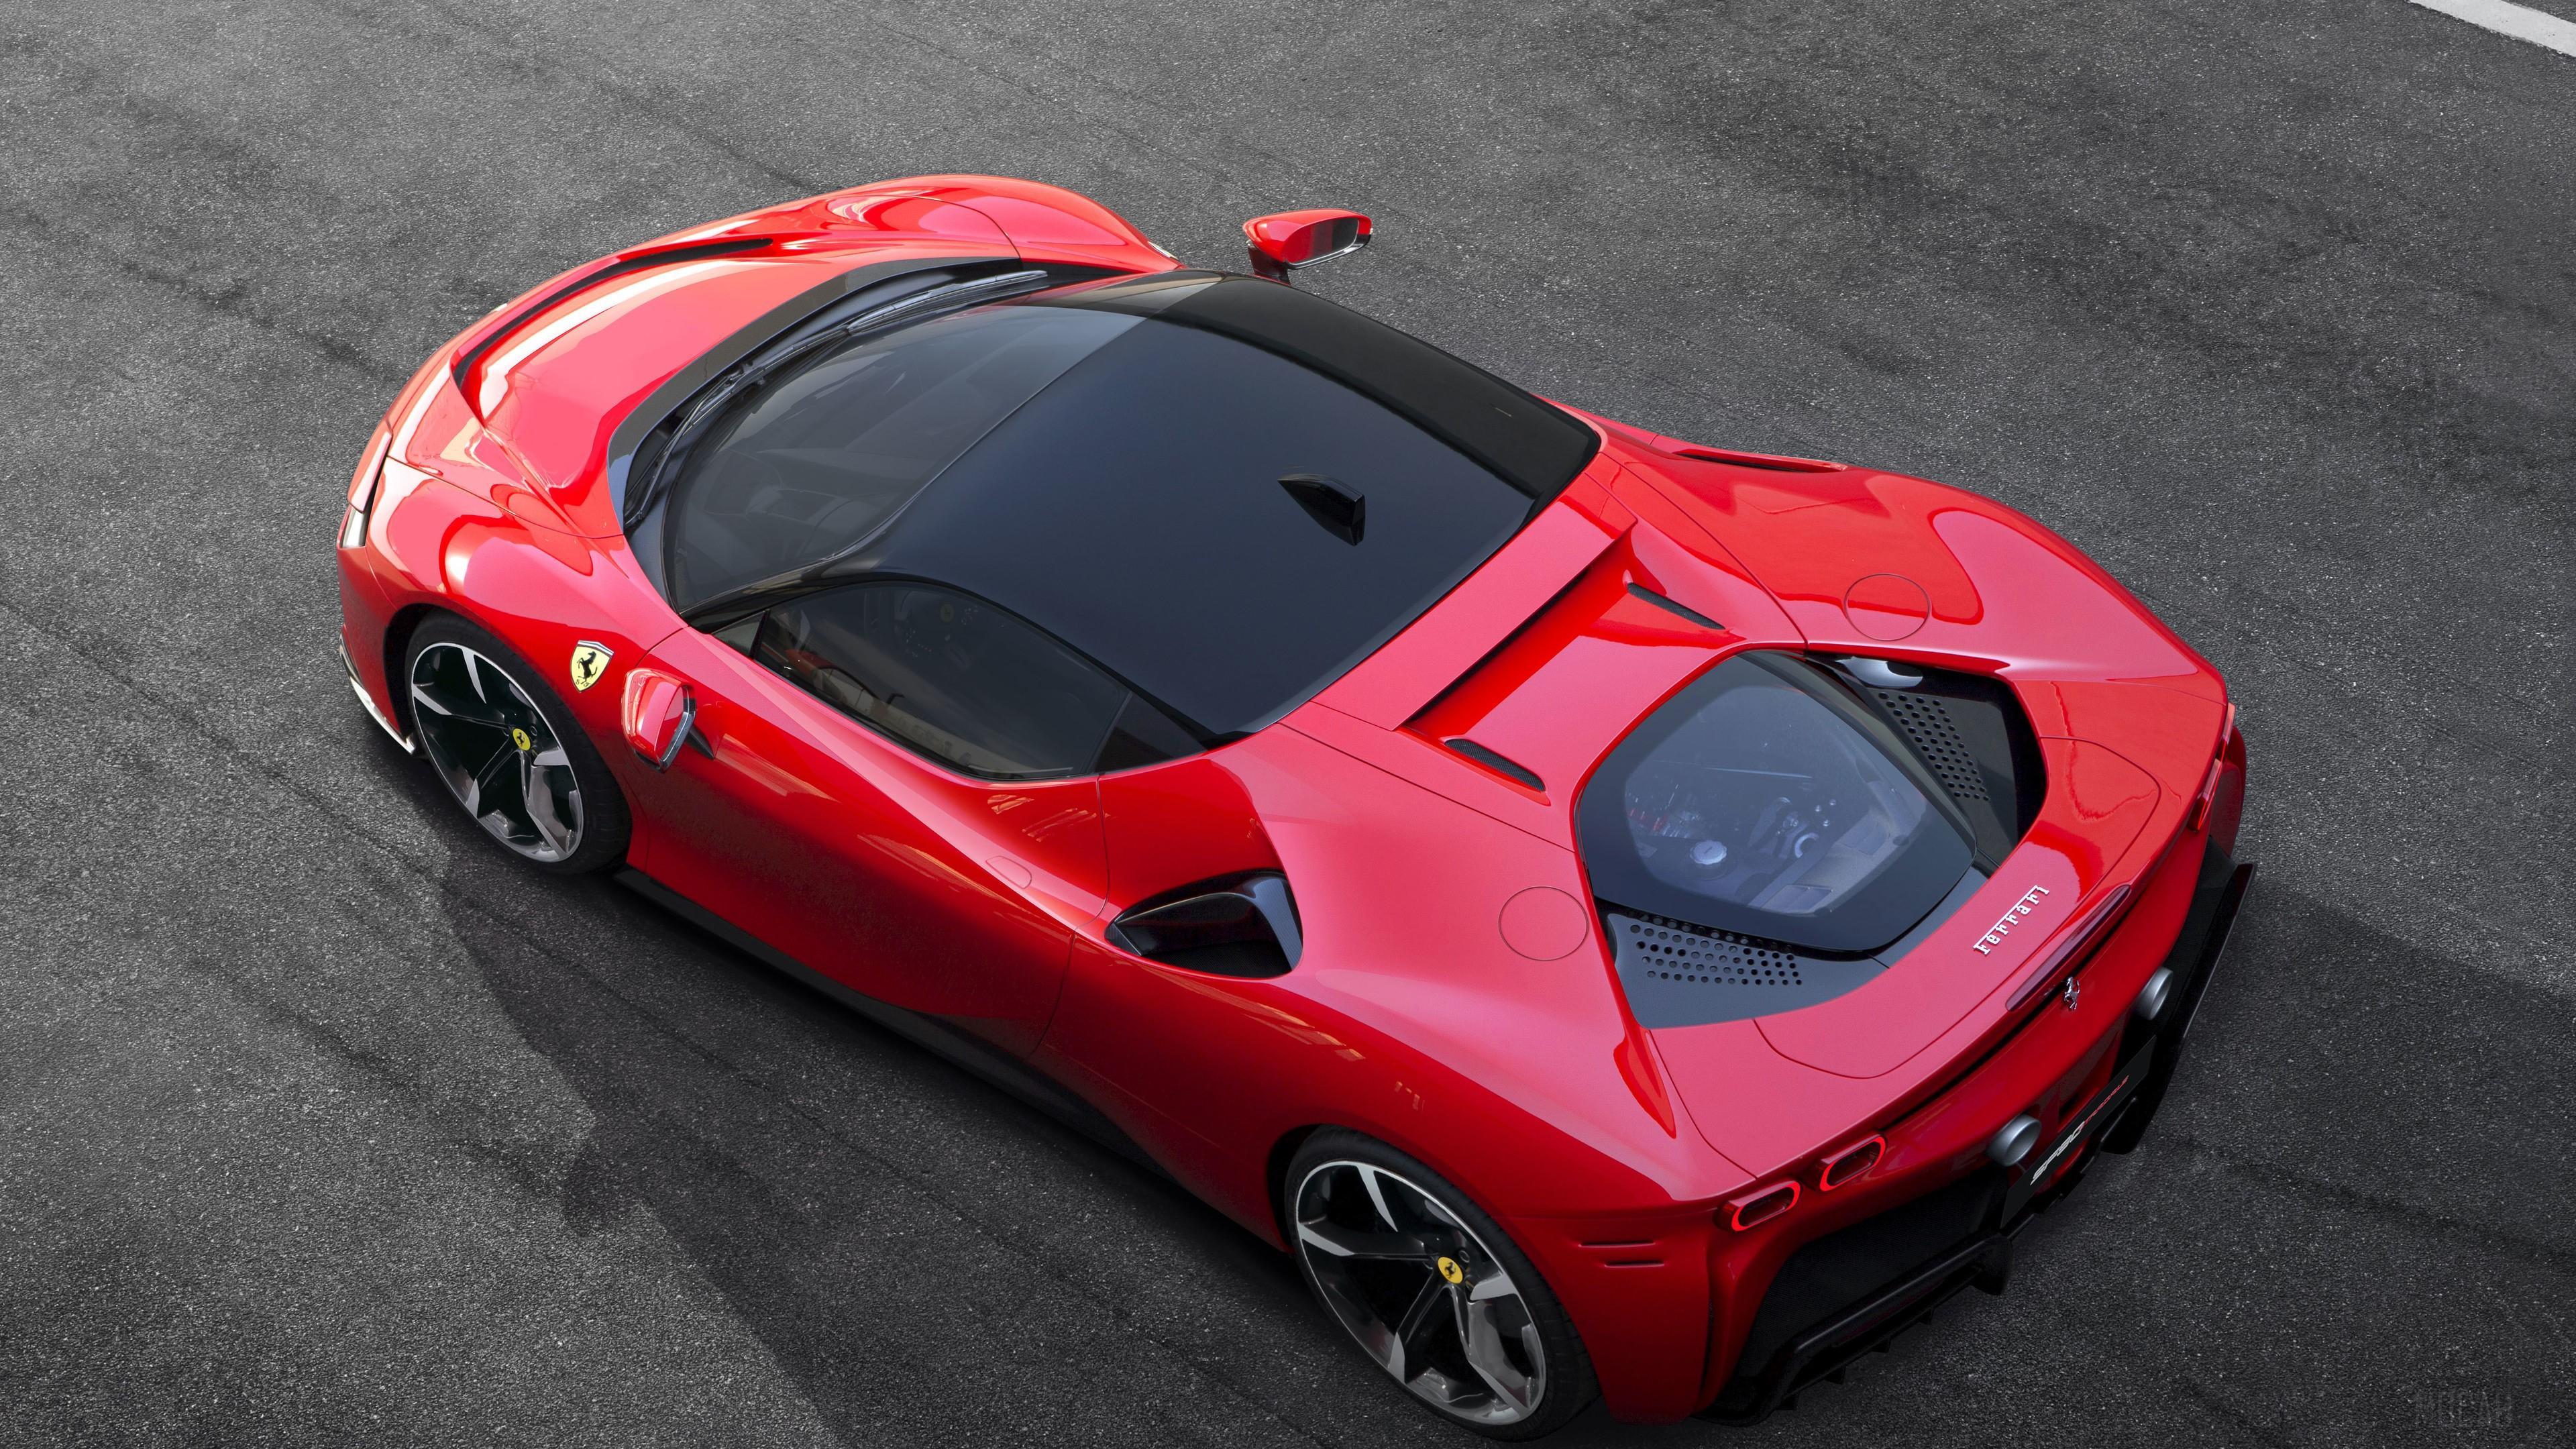 HD wallpaper, Ferrari Sf90 Stradale Assetto Fiorano 2019 Upper View 4K